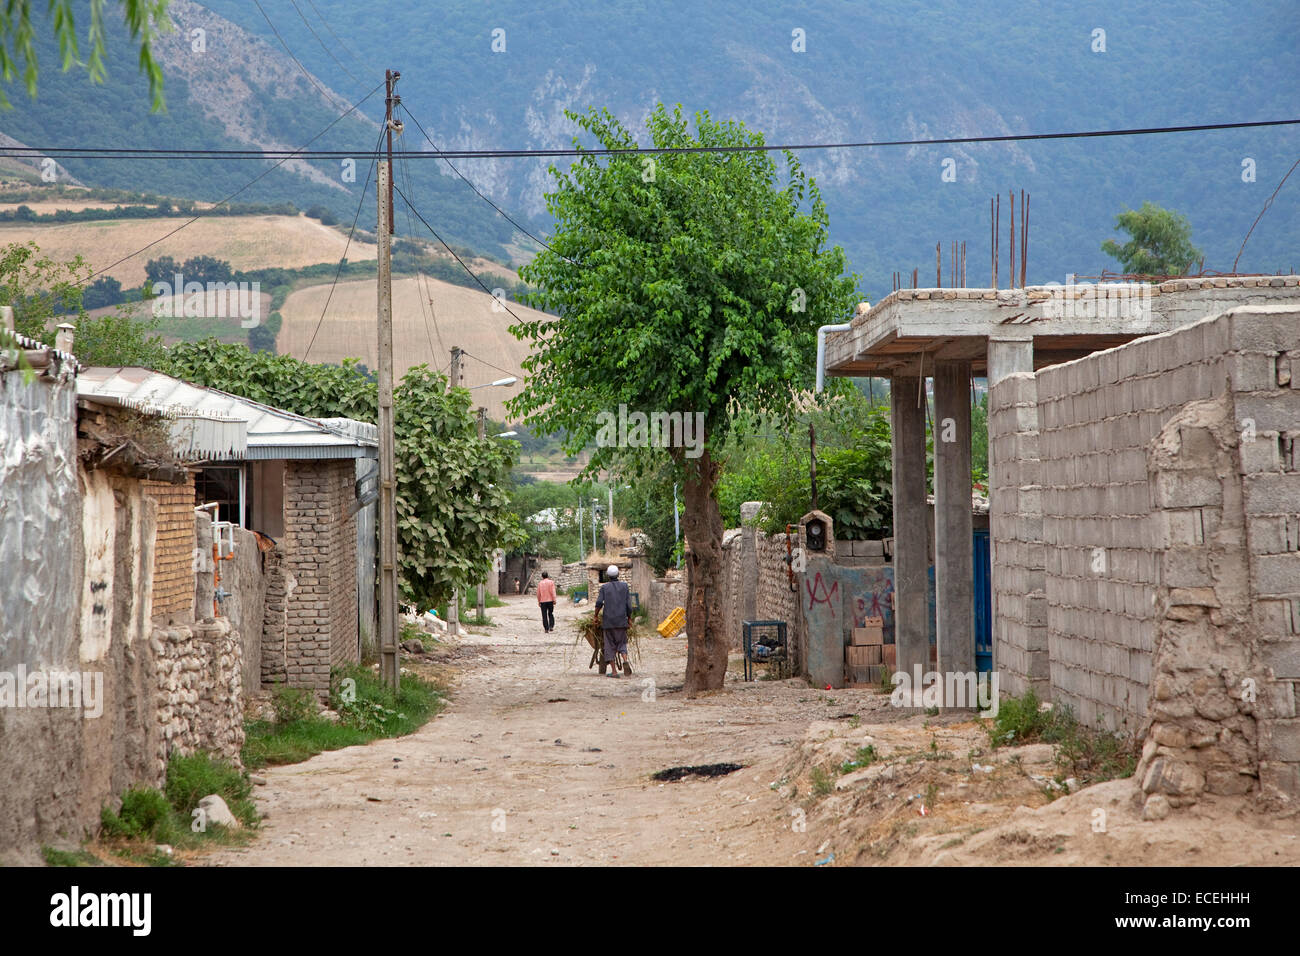 Las casas a lo largo de callejón, en una pequeña aldea rural en Irán Foto de stock